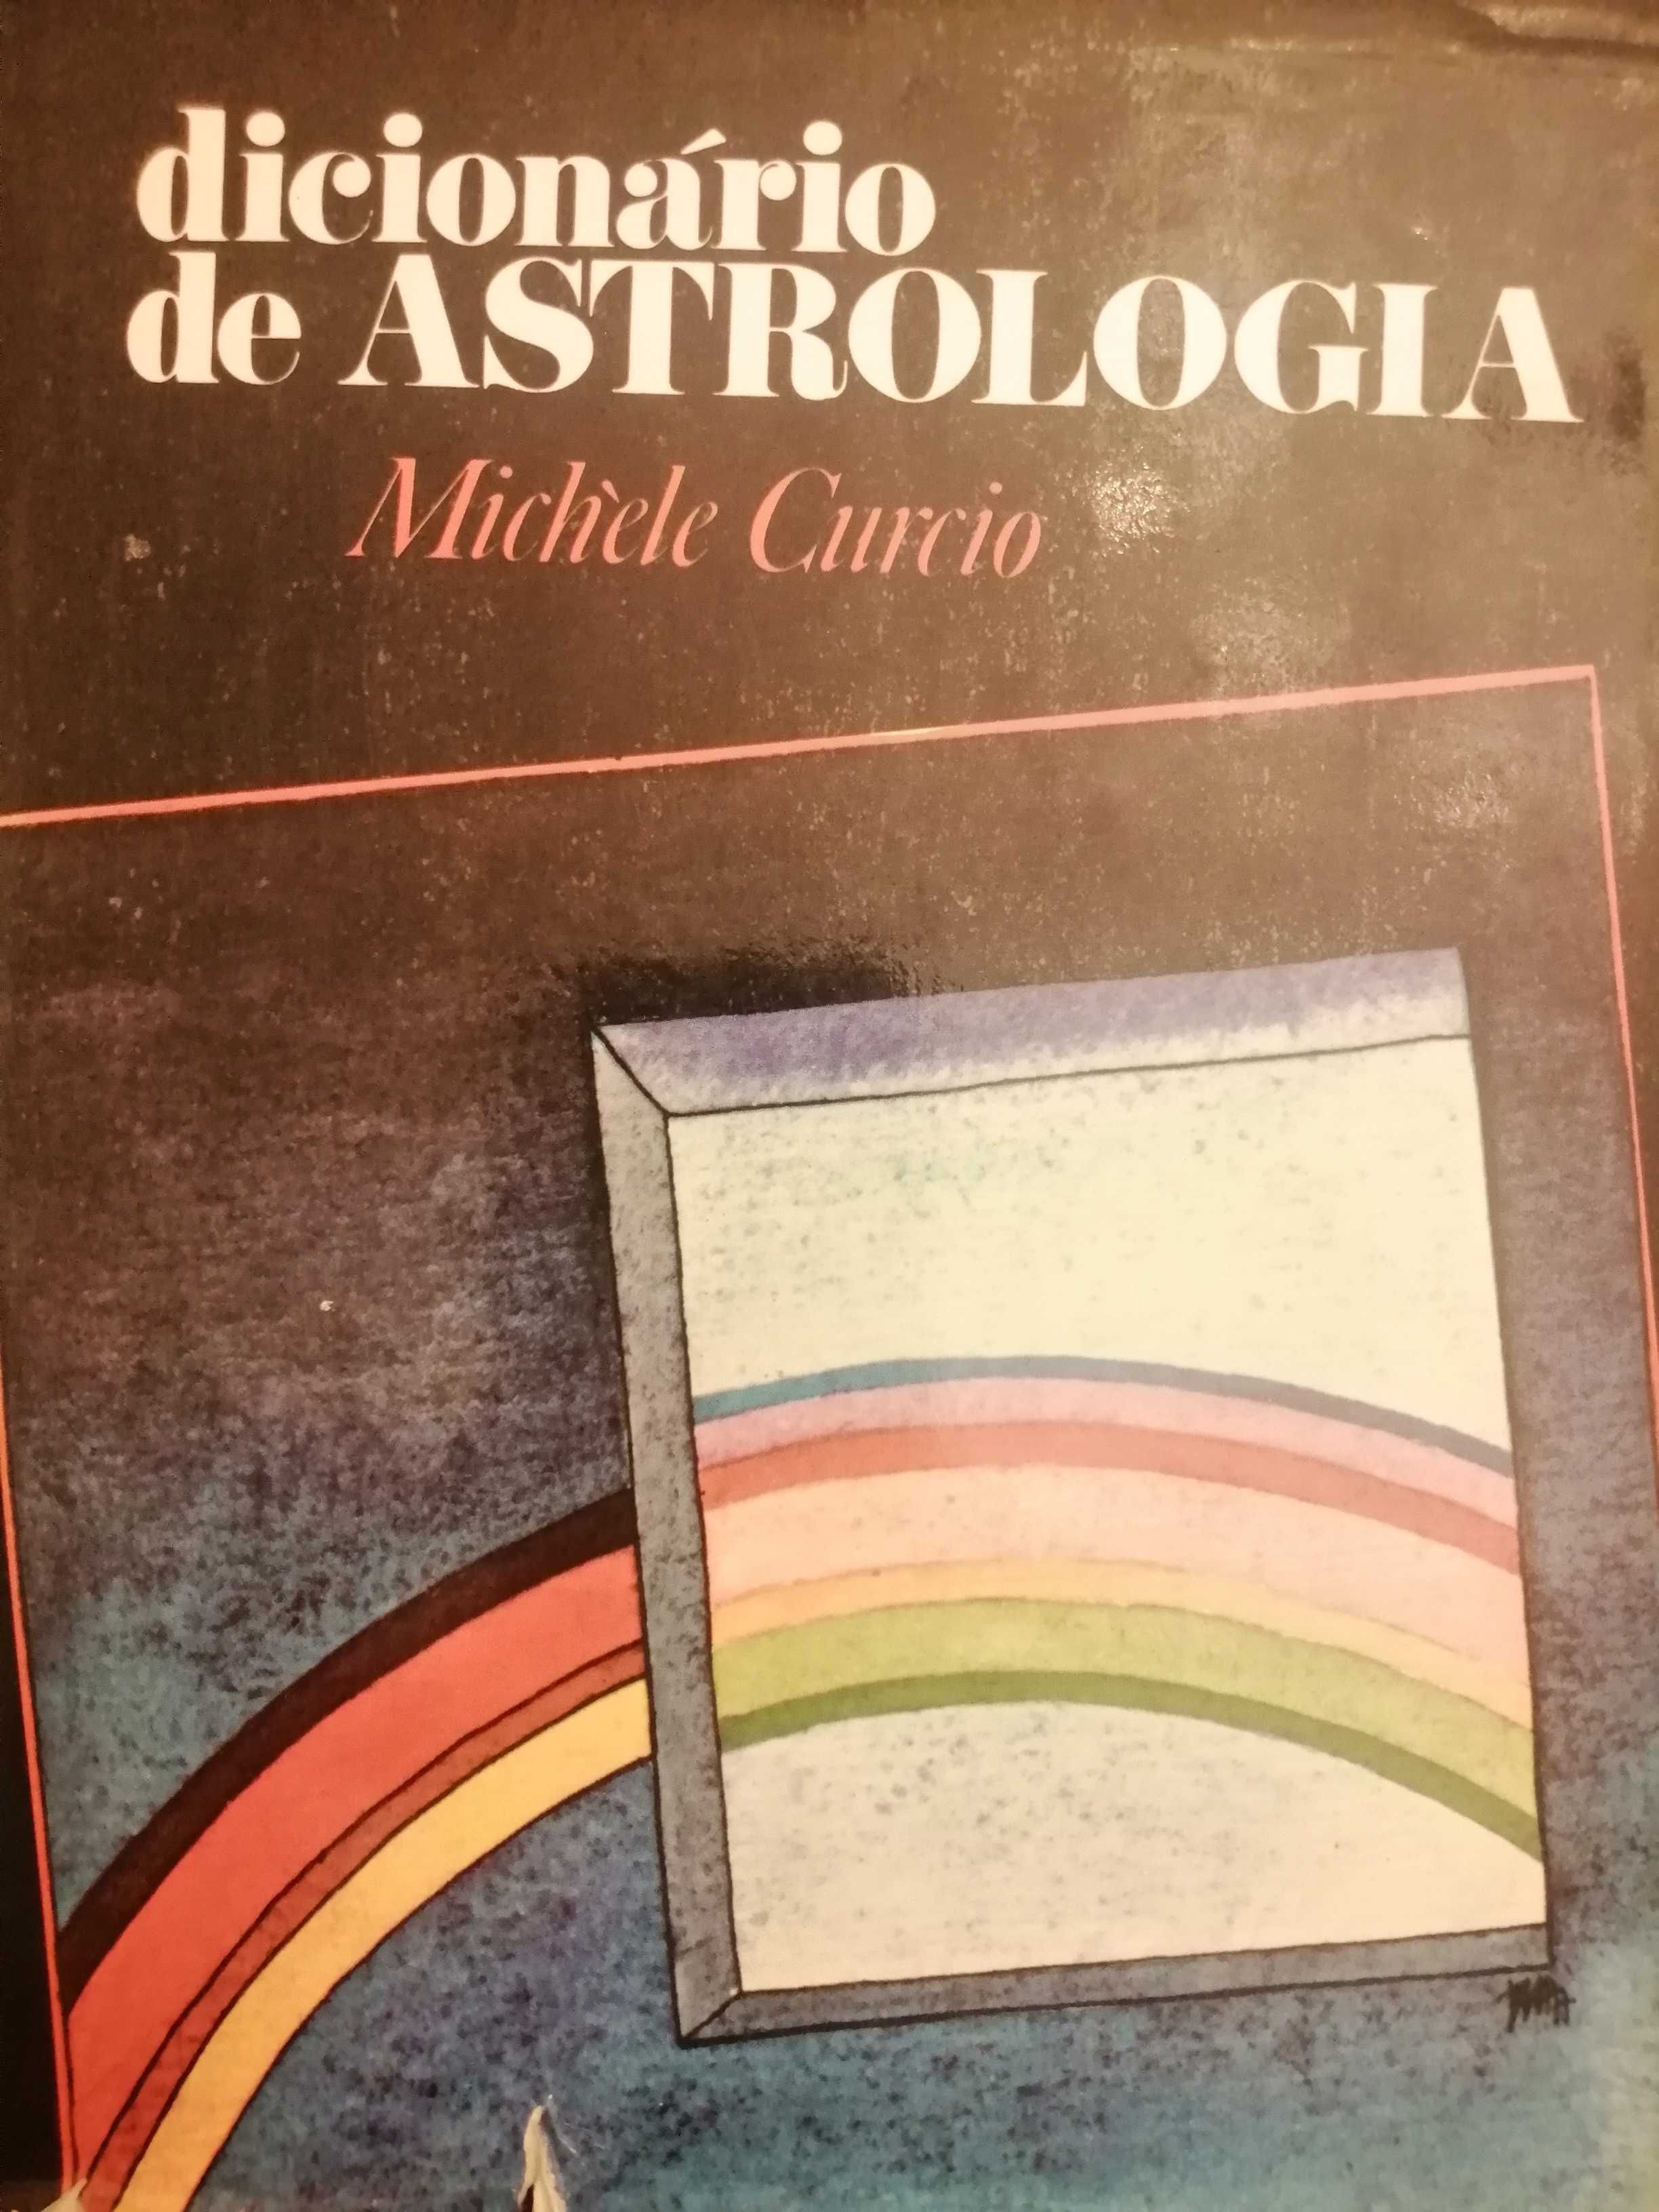 Dicionário de astrologia, Michele Curcio